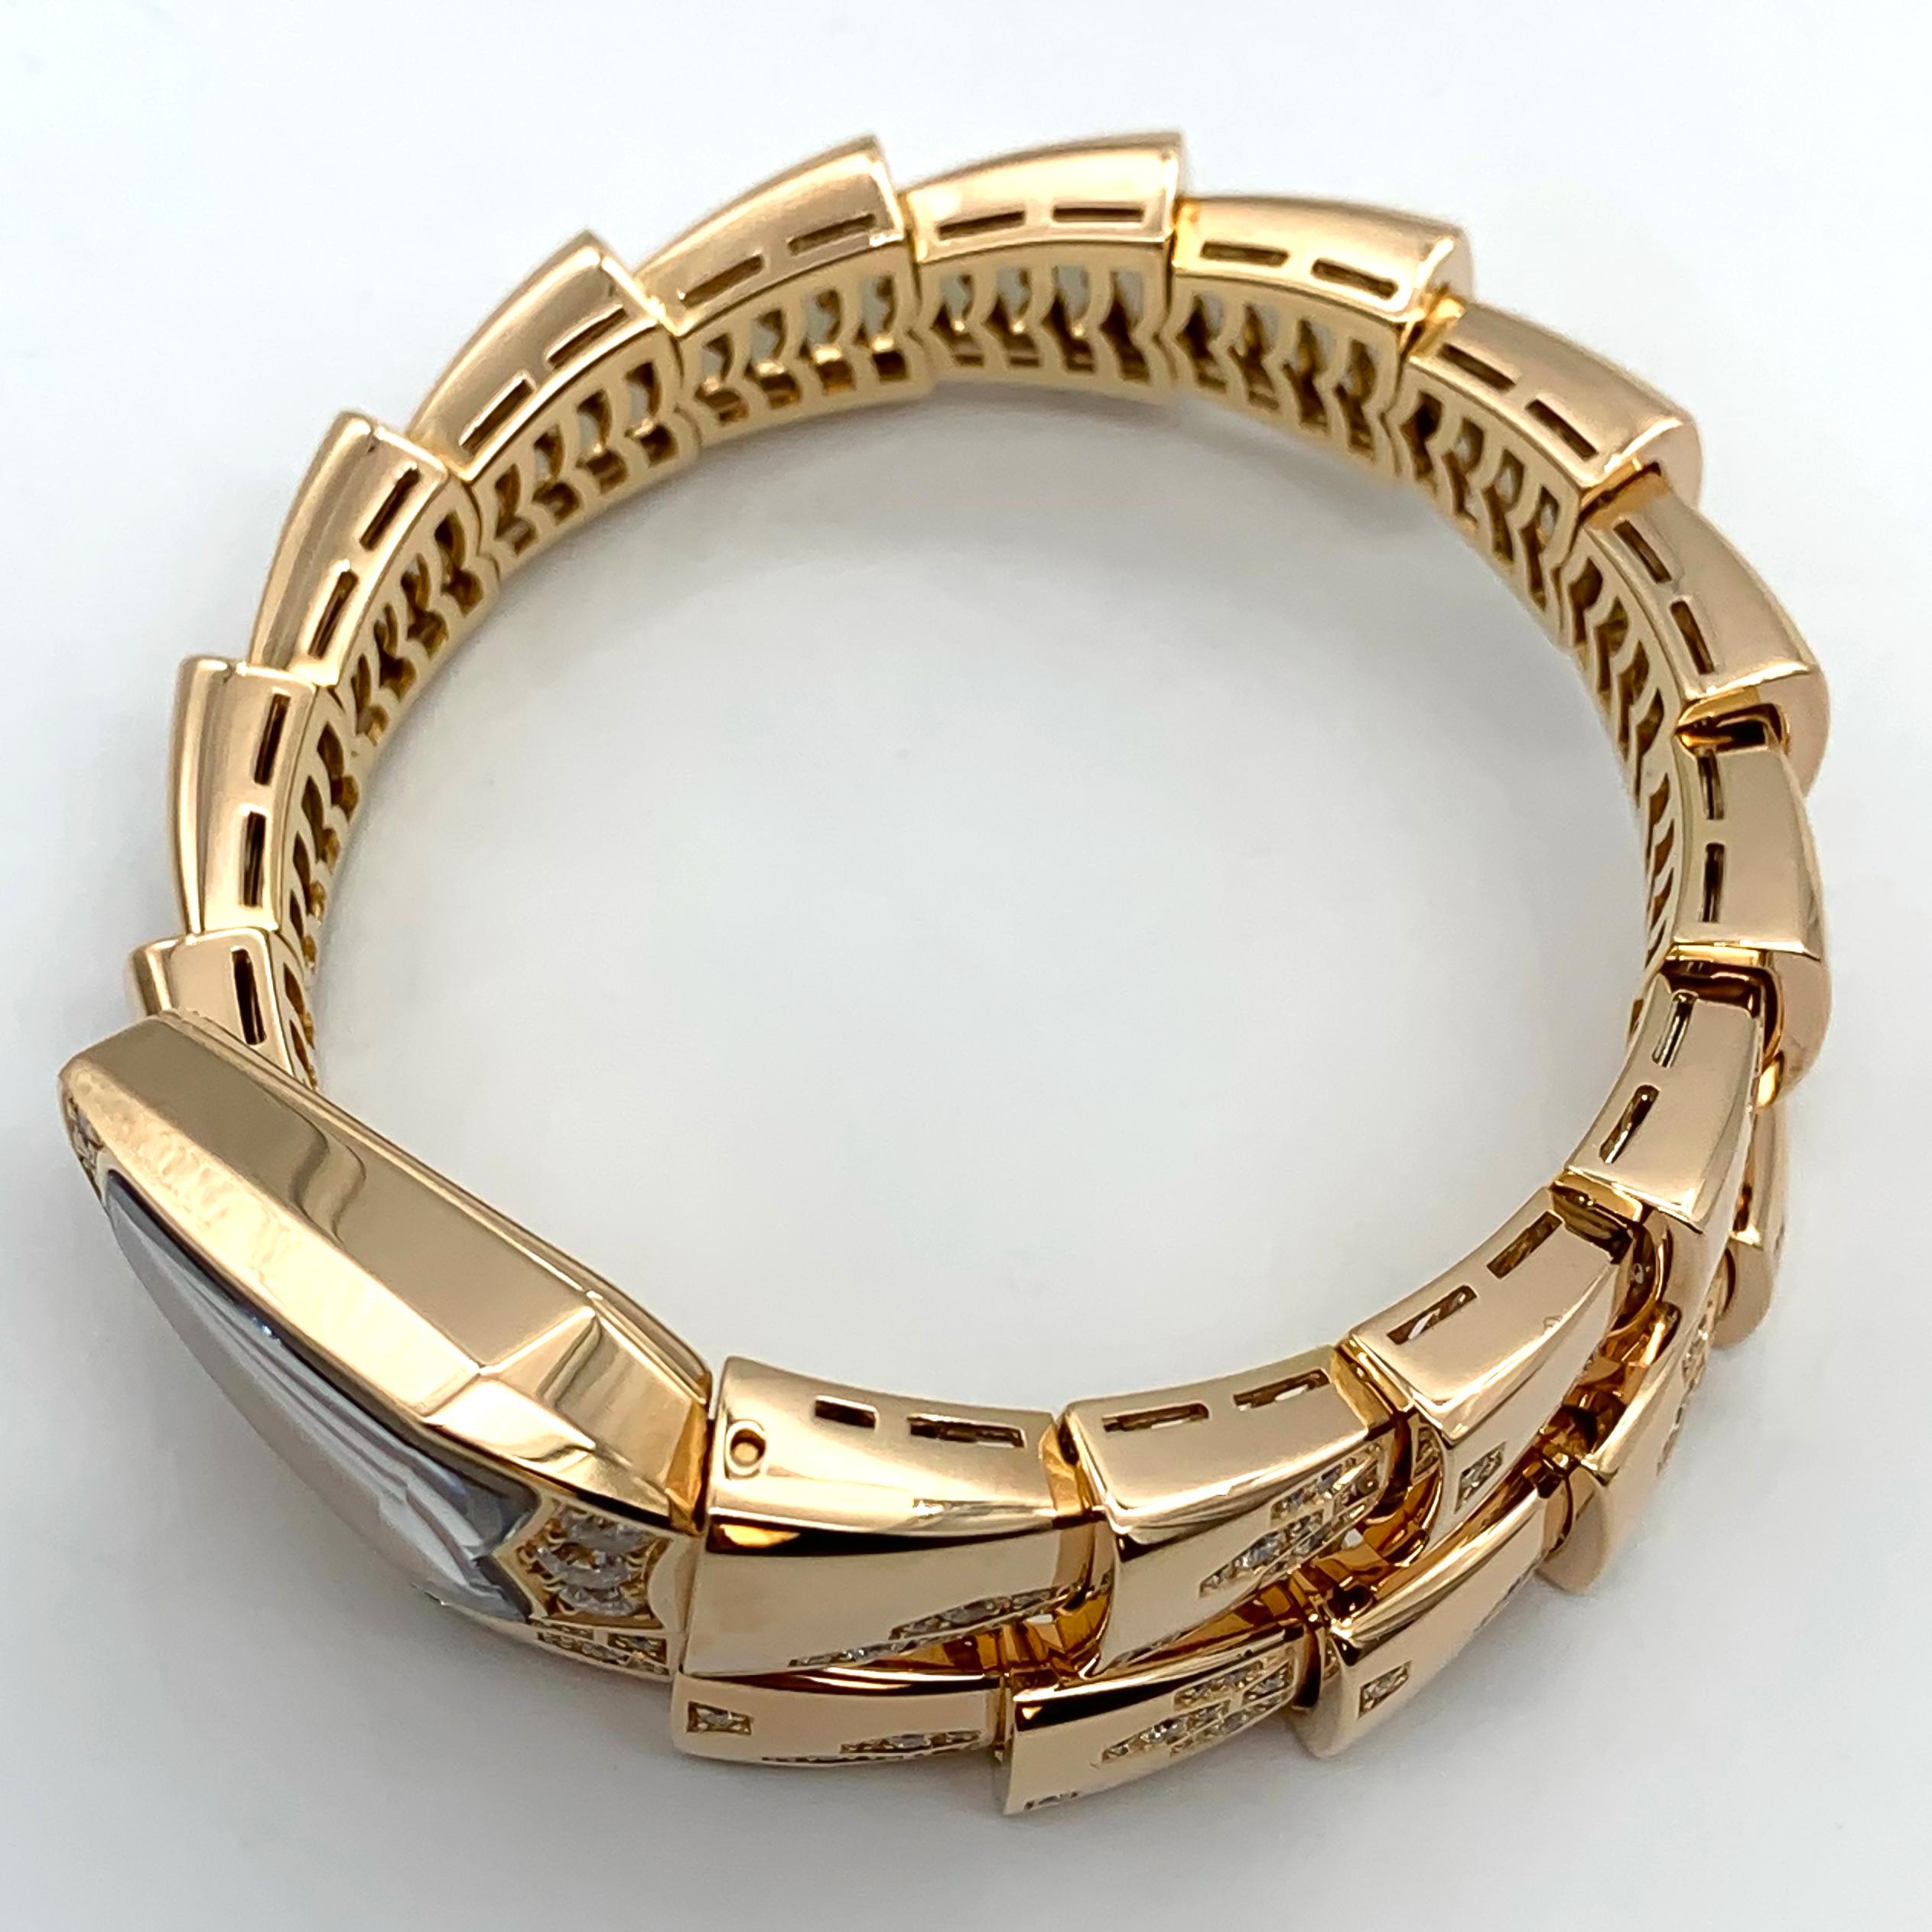 Round Cut Bulgari Serpenti Ref. 101995, 18K Rose Gold Diamond Quartz Ladies Watch For Sale